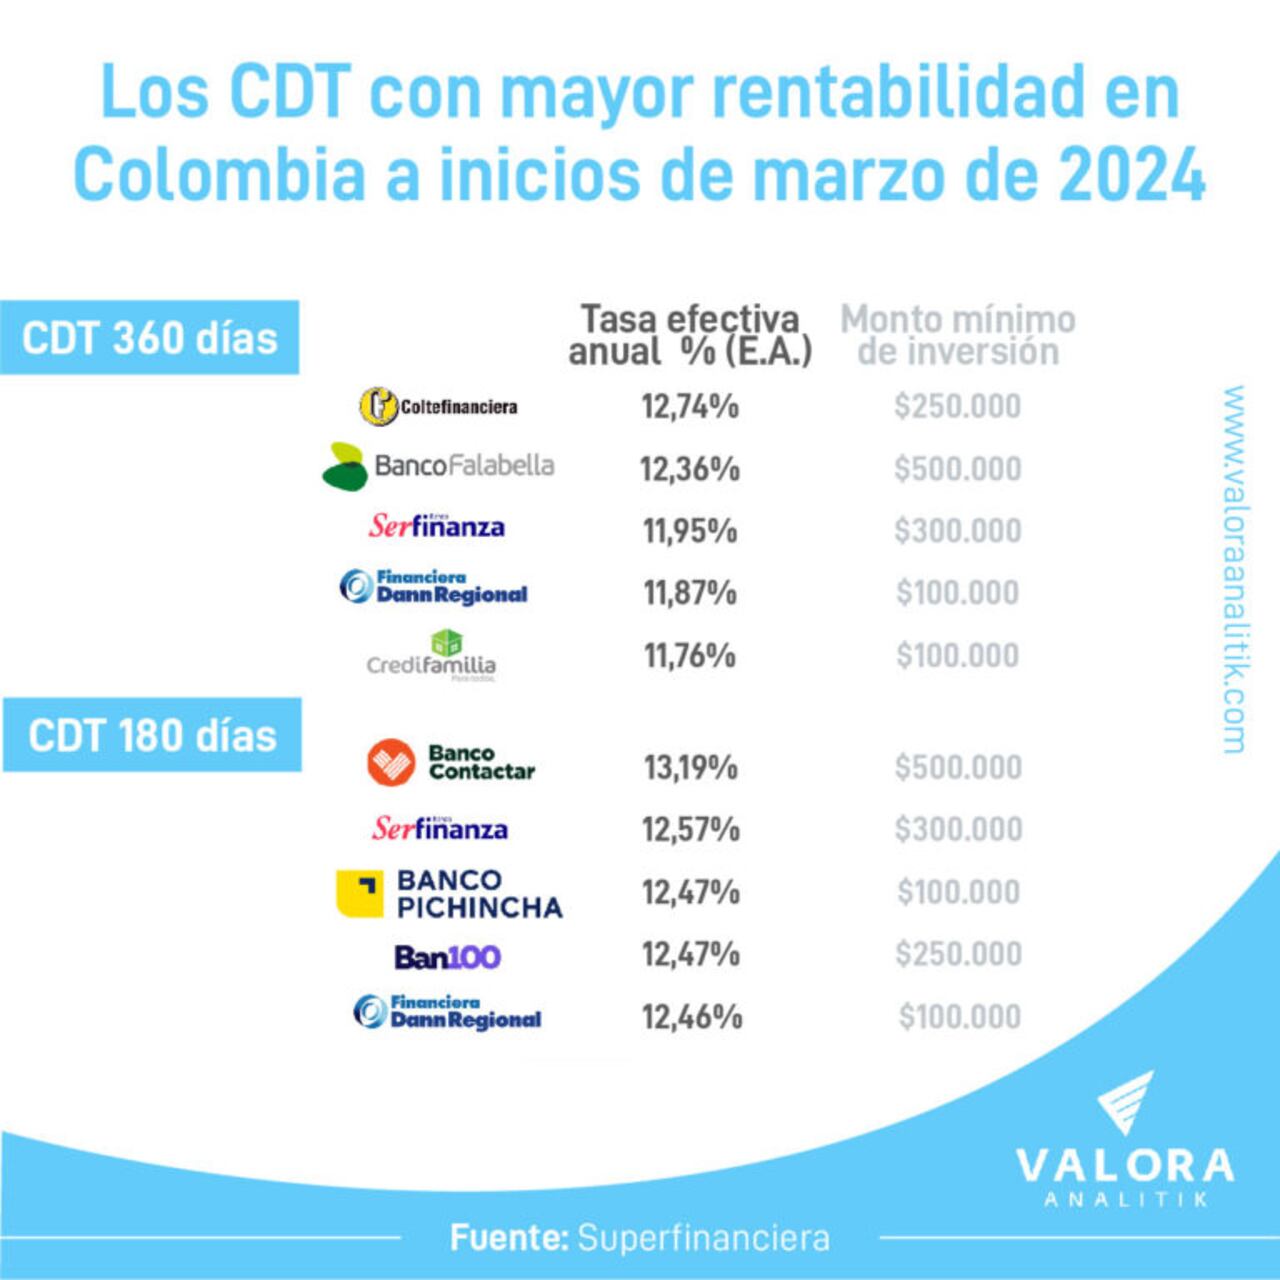 Valora Analitik presentó la lista de CDT que dan mayor rentabilidad en Marzo de 2024.
Foto: Valora Analitik